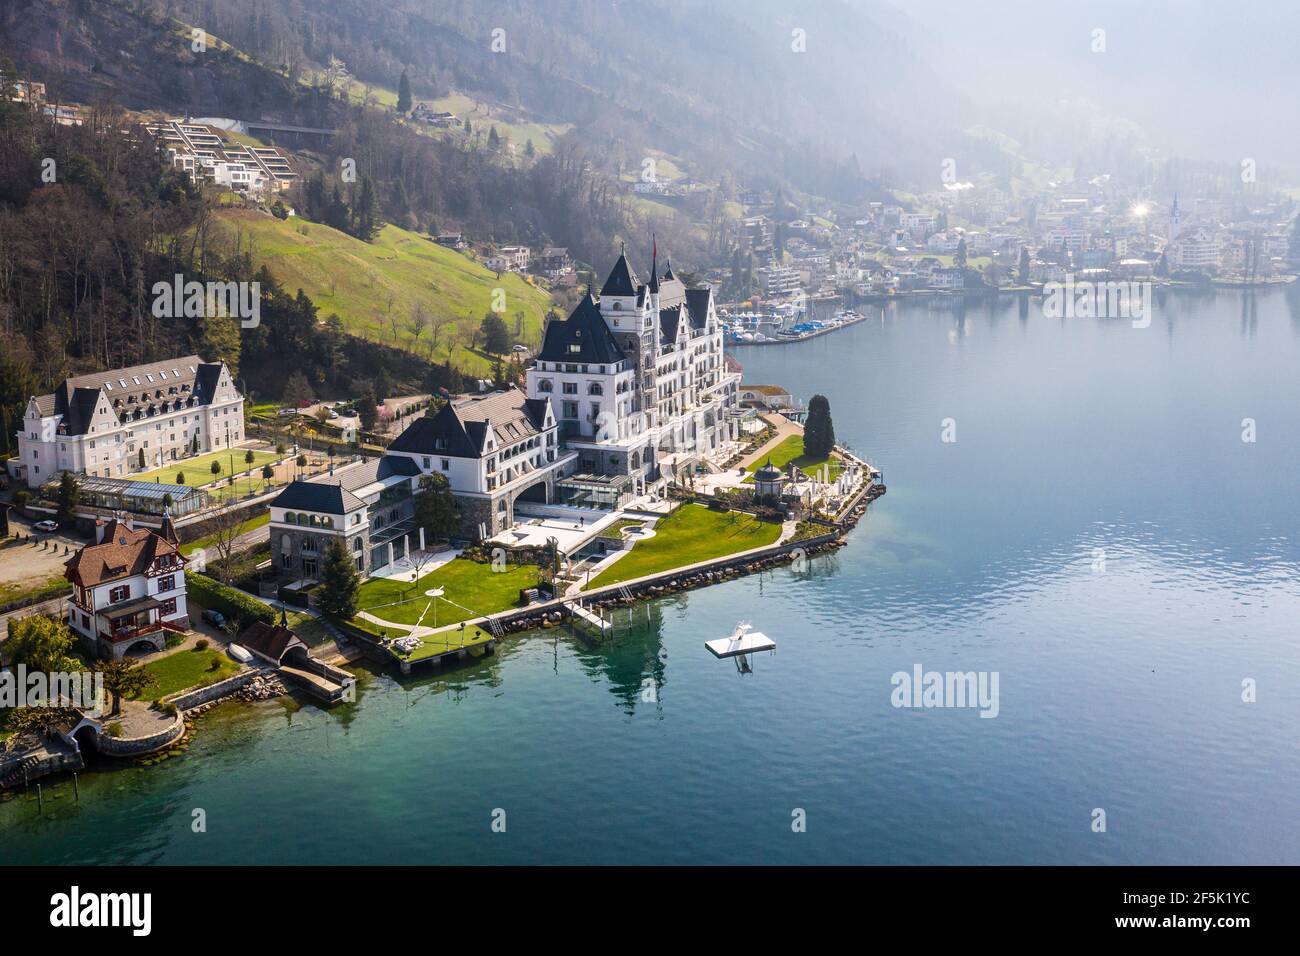 Vitznau, Svizzera - Marzo 28 2020: Spettacolare vista aerea del lussuoso Park Hotel Vitznau, situato vicino al lago di Lucerna, nella Svizzera centrale Foto Stock